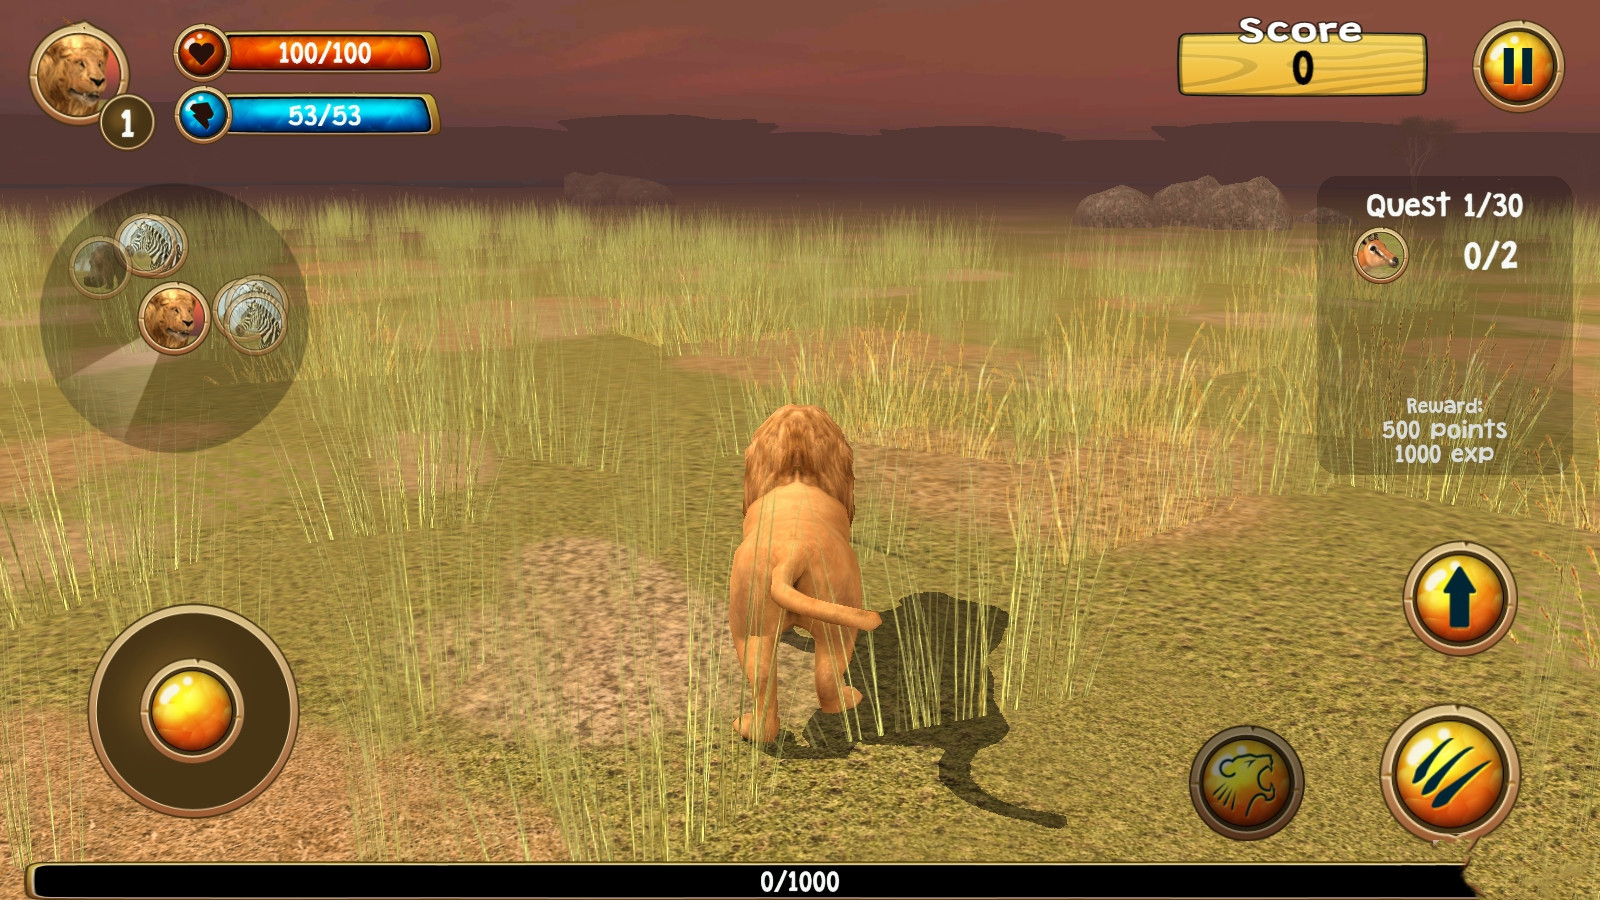 草原之王模拟器Wild Lion Sim